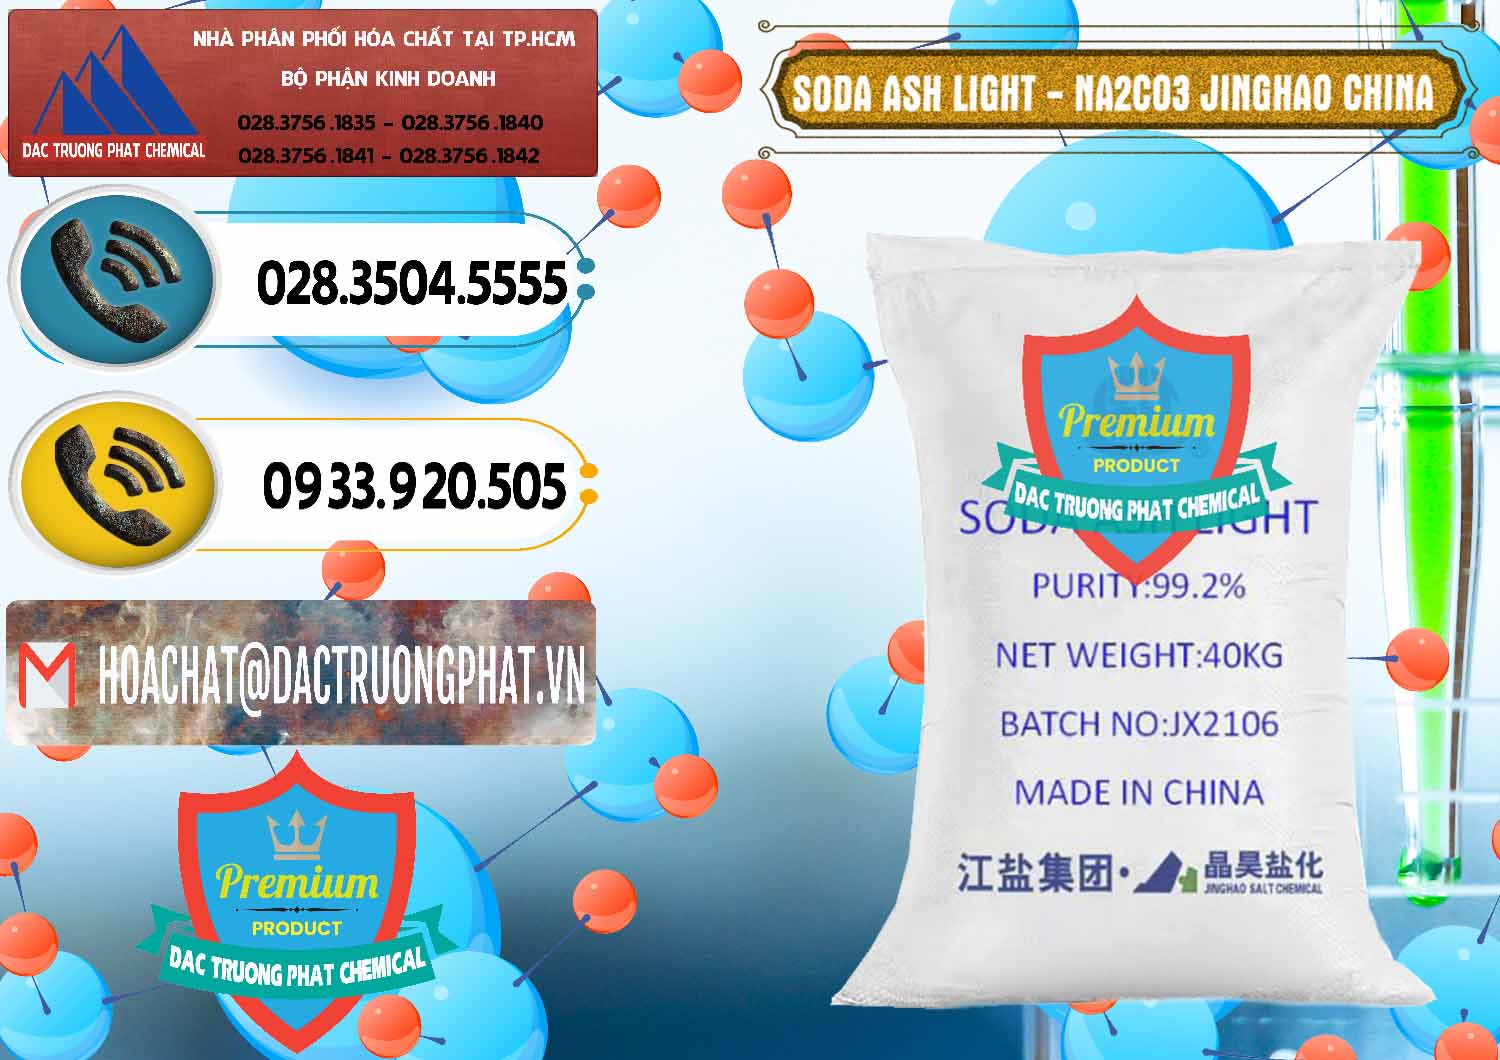 Cty bán ( cung ứng ) Soda Ash Light - NA2CO3 Jinghao Trung Quốc China - 0339 - Công ty cung cấp ( nhập khẩu ) hóa chất tại TP.HCM - hoachatdetnhuom.vn